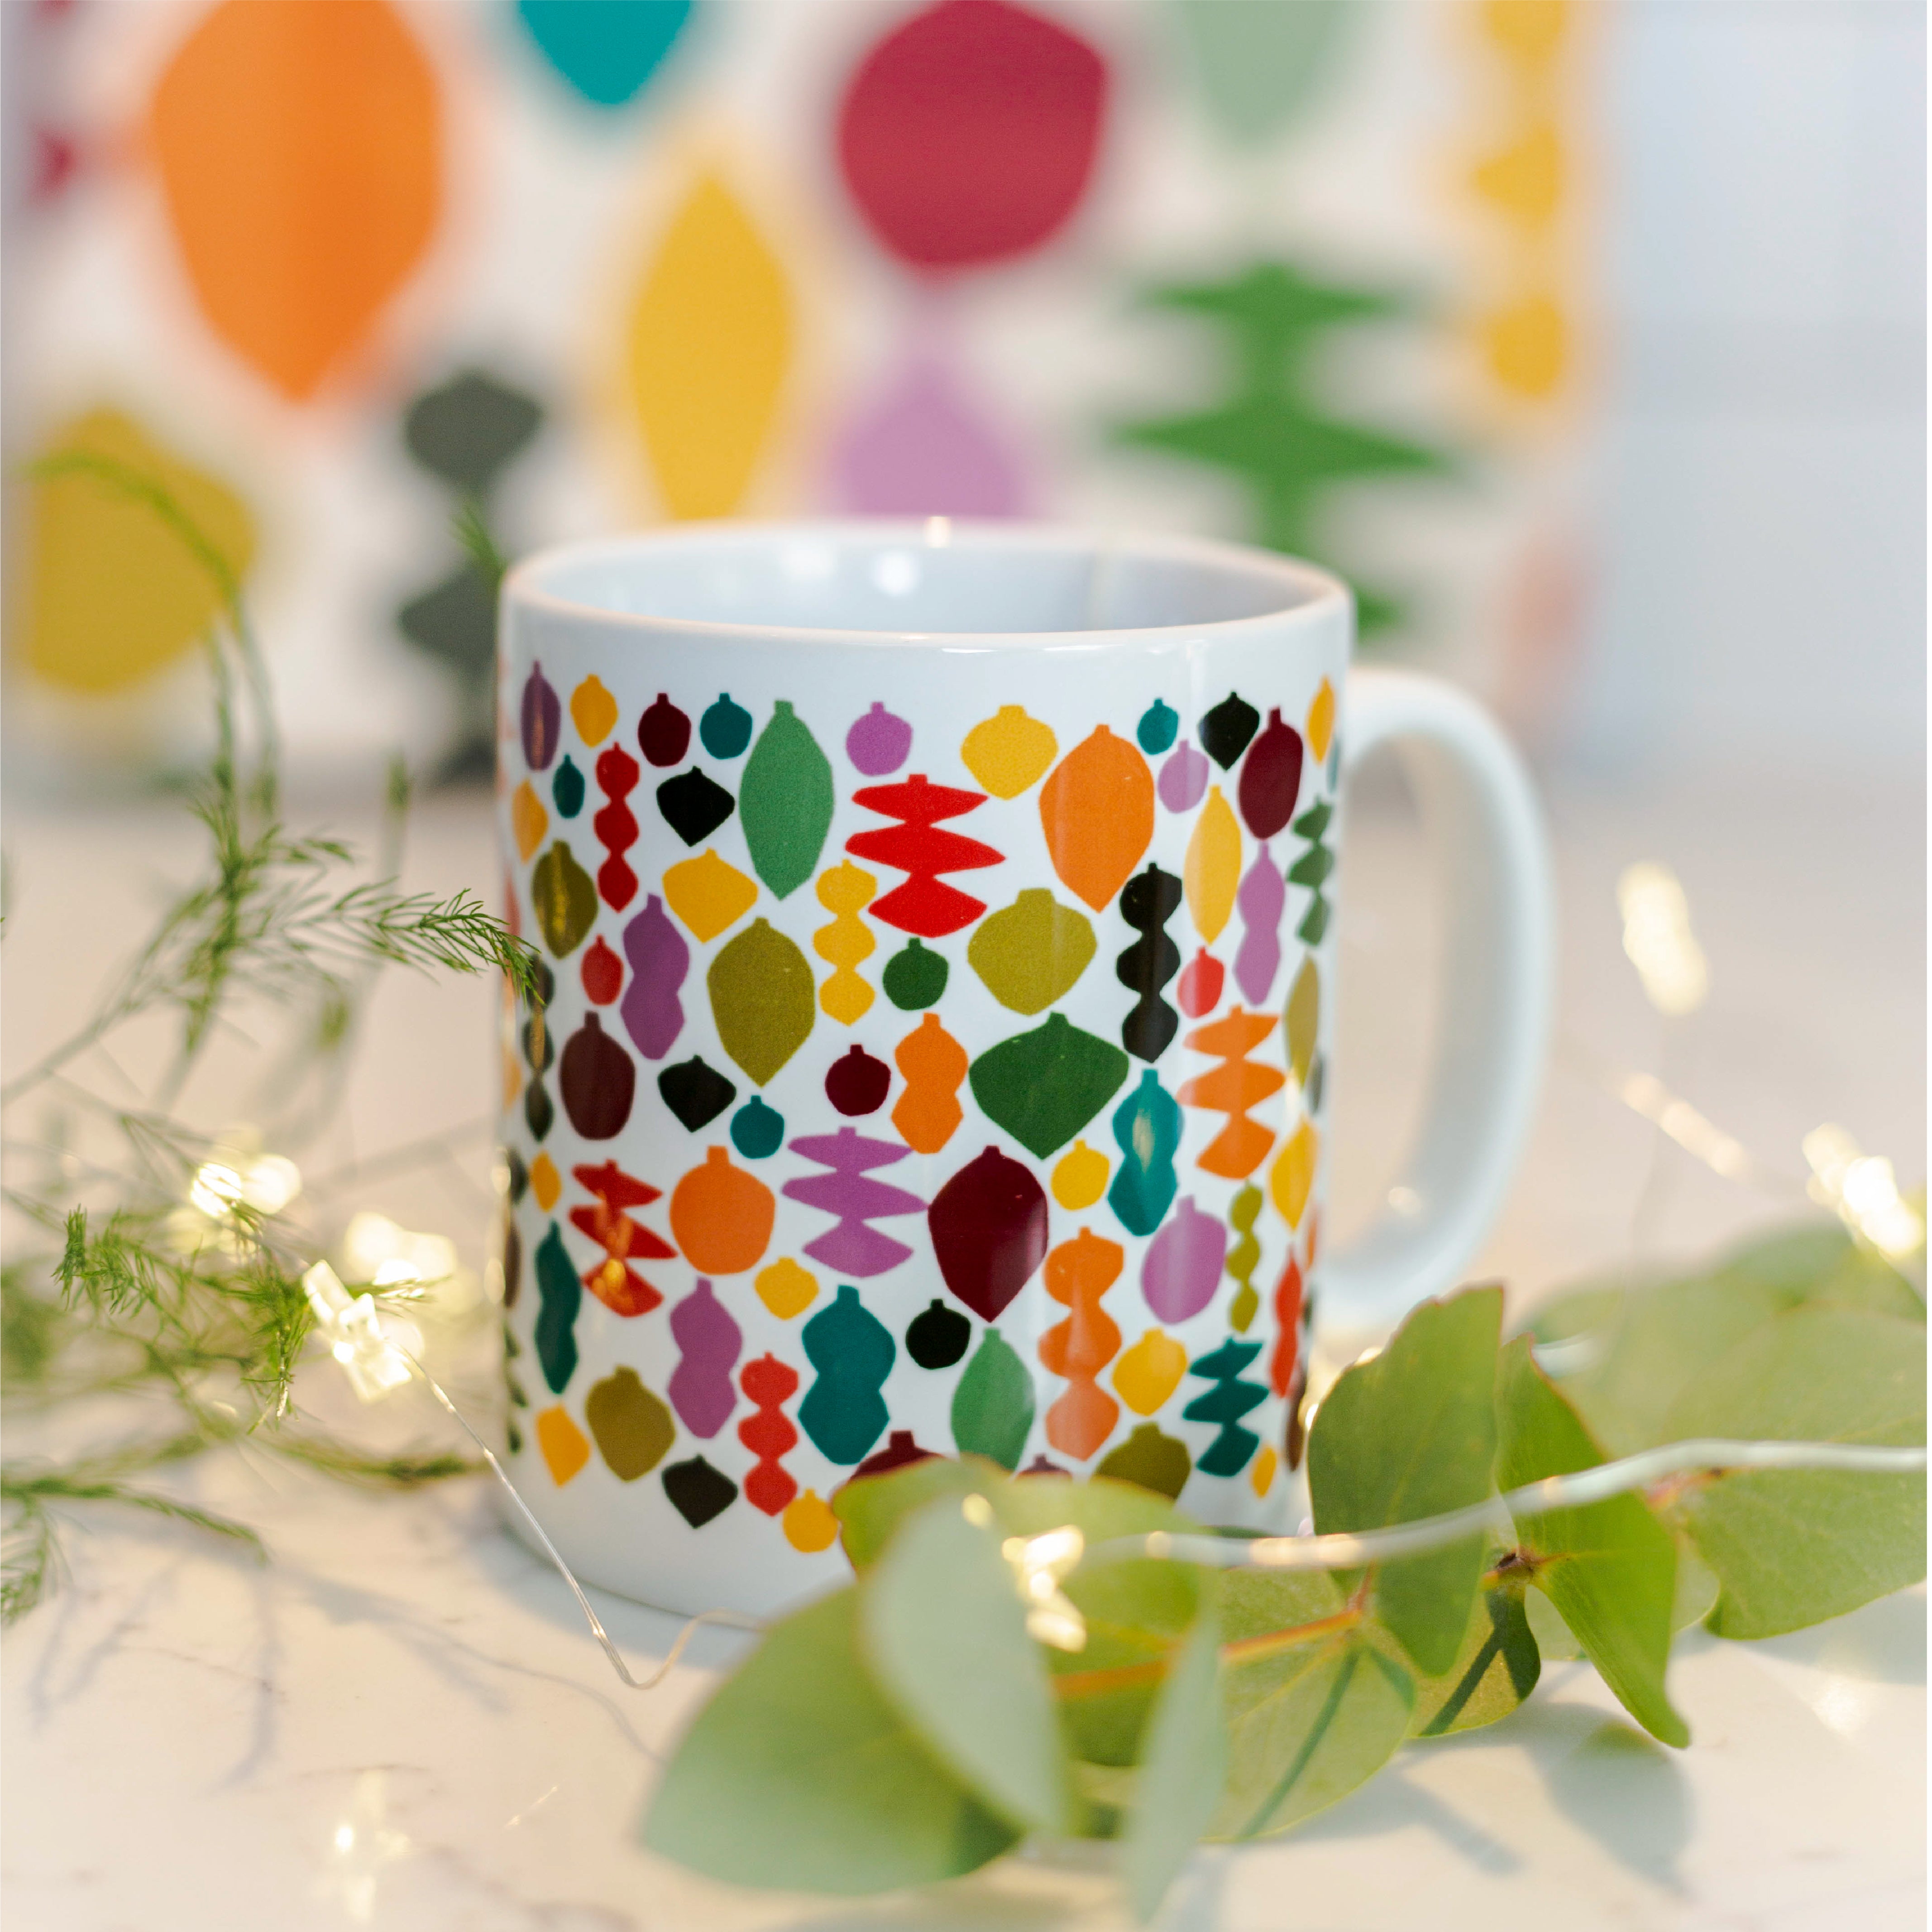 Colourful baubles mug - Lily Windsor Walker